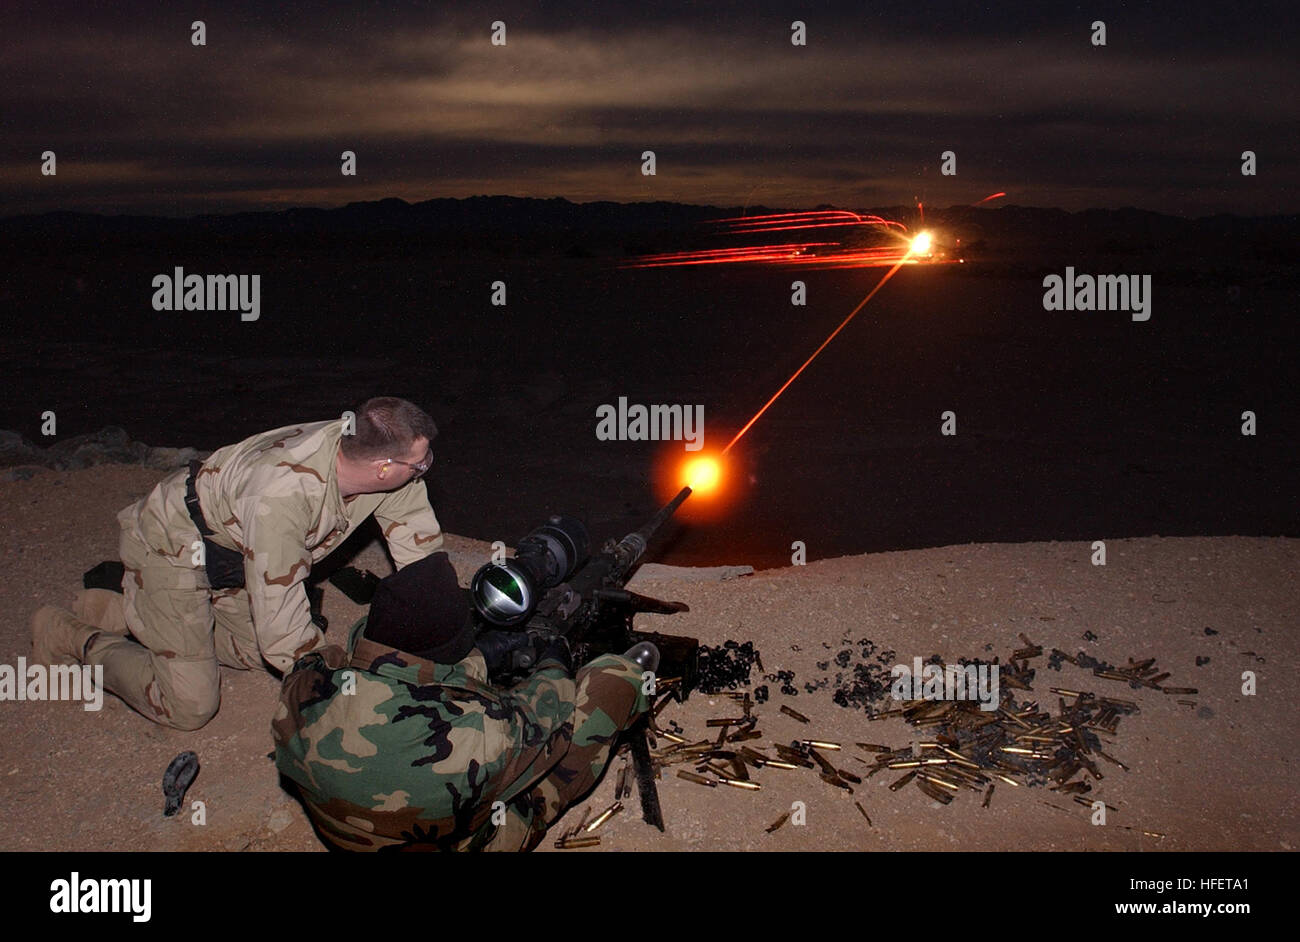 Operações Especiais - Uma serpente negra passa em frente de um atirador  camuflado durante treinamento de infantaria próximo à Base Aérea de Eglin,  na Flórida, Estados Unidos. Os snipers são treinados para